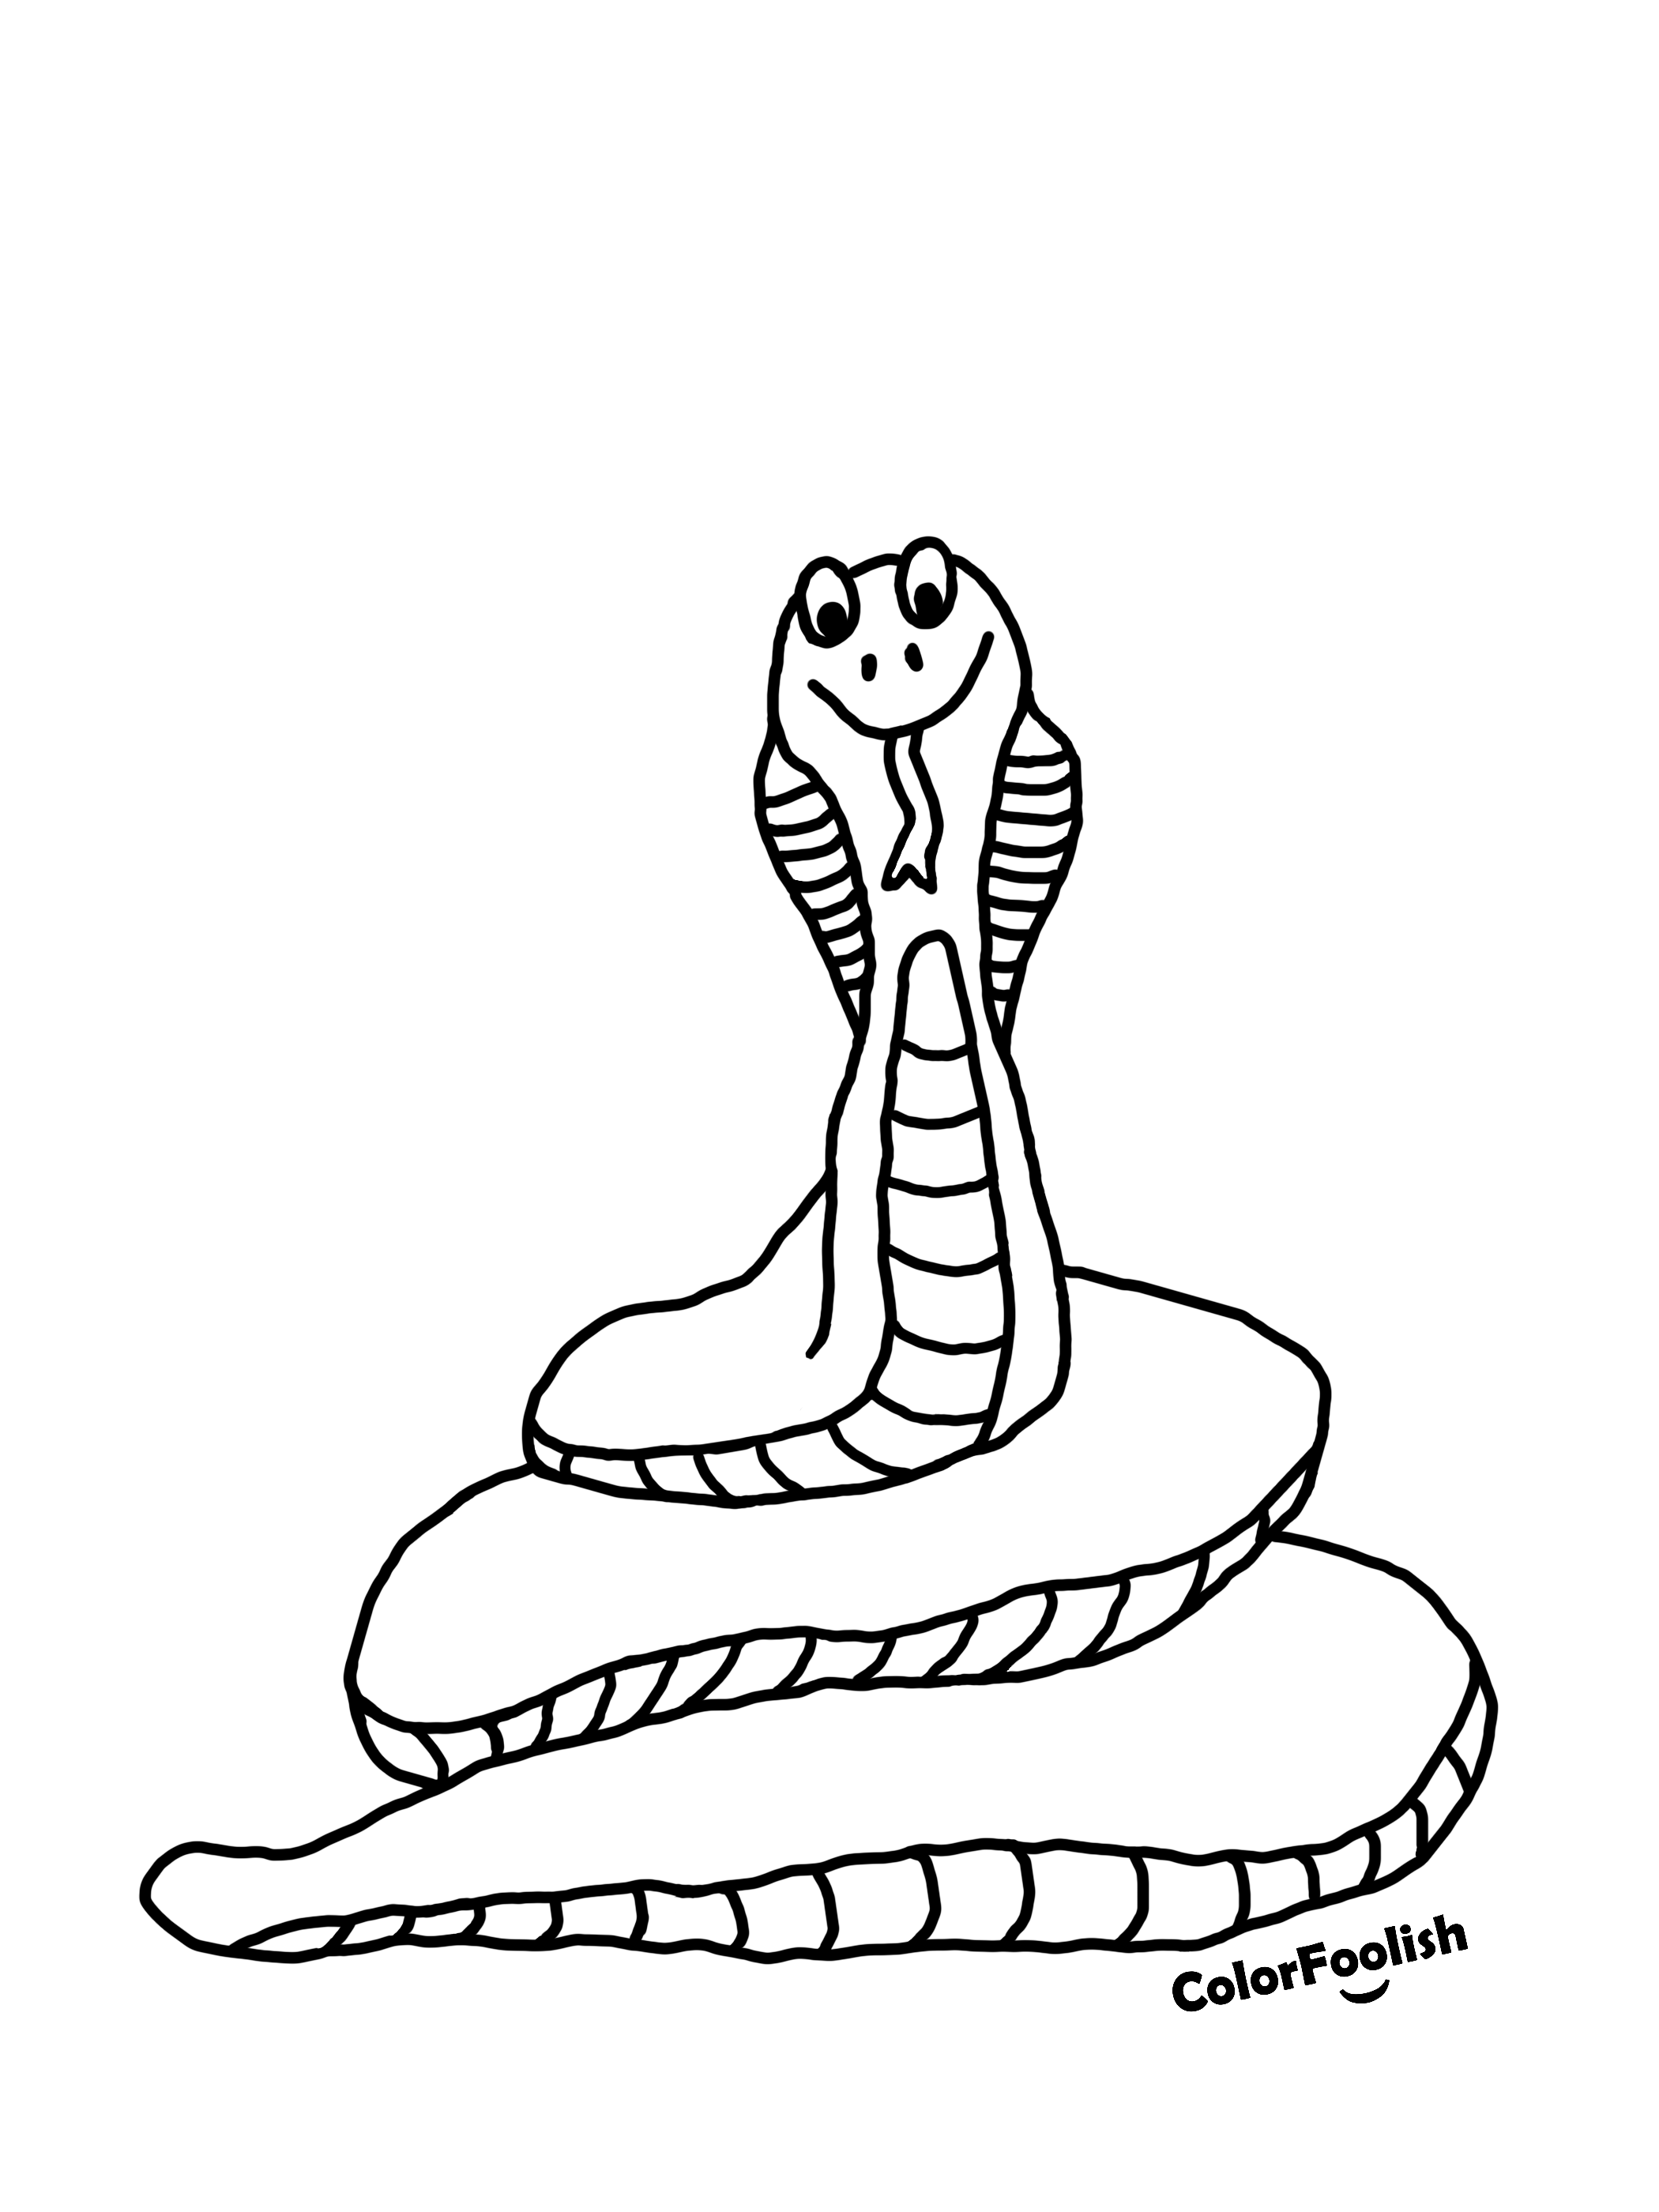 Розмальовка сторінки згорнутої змії